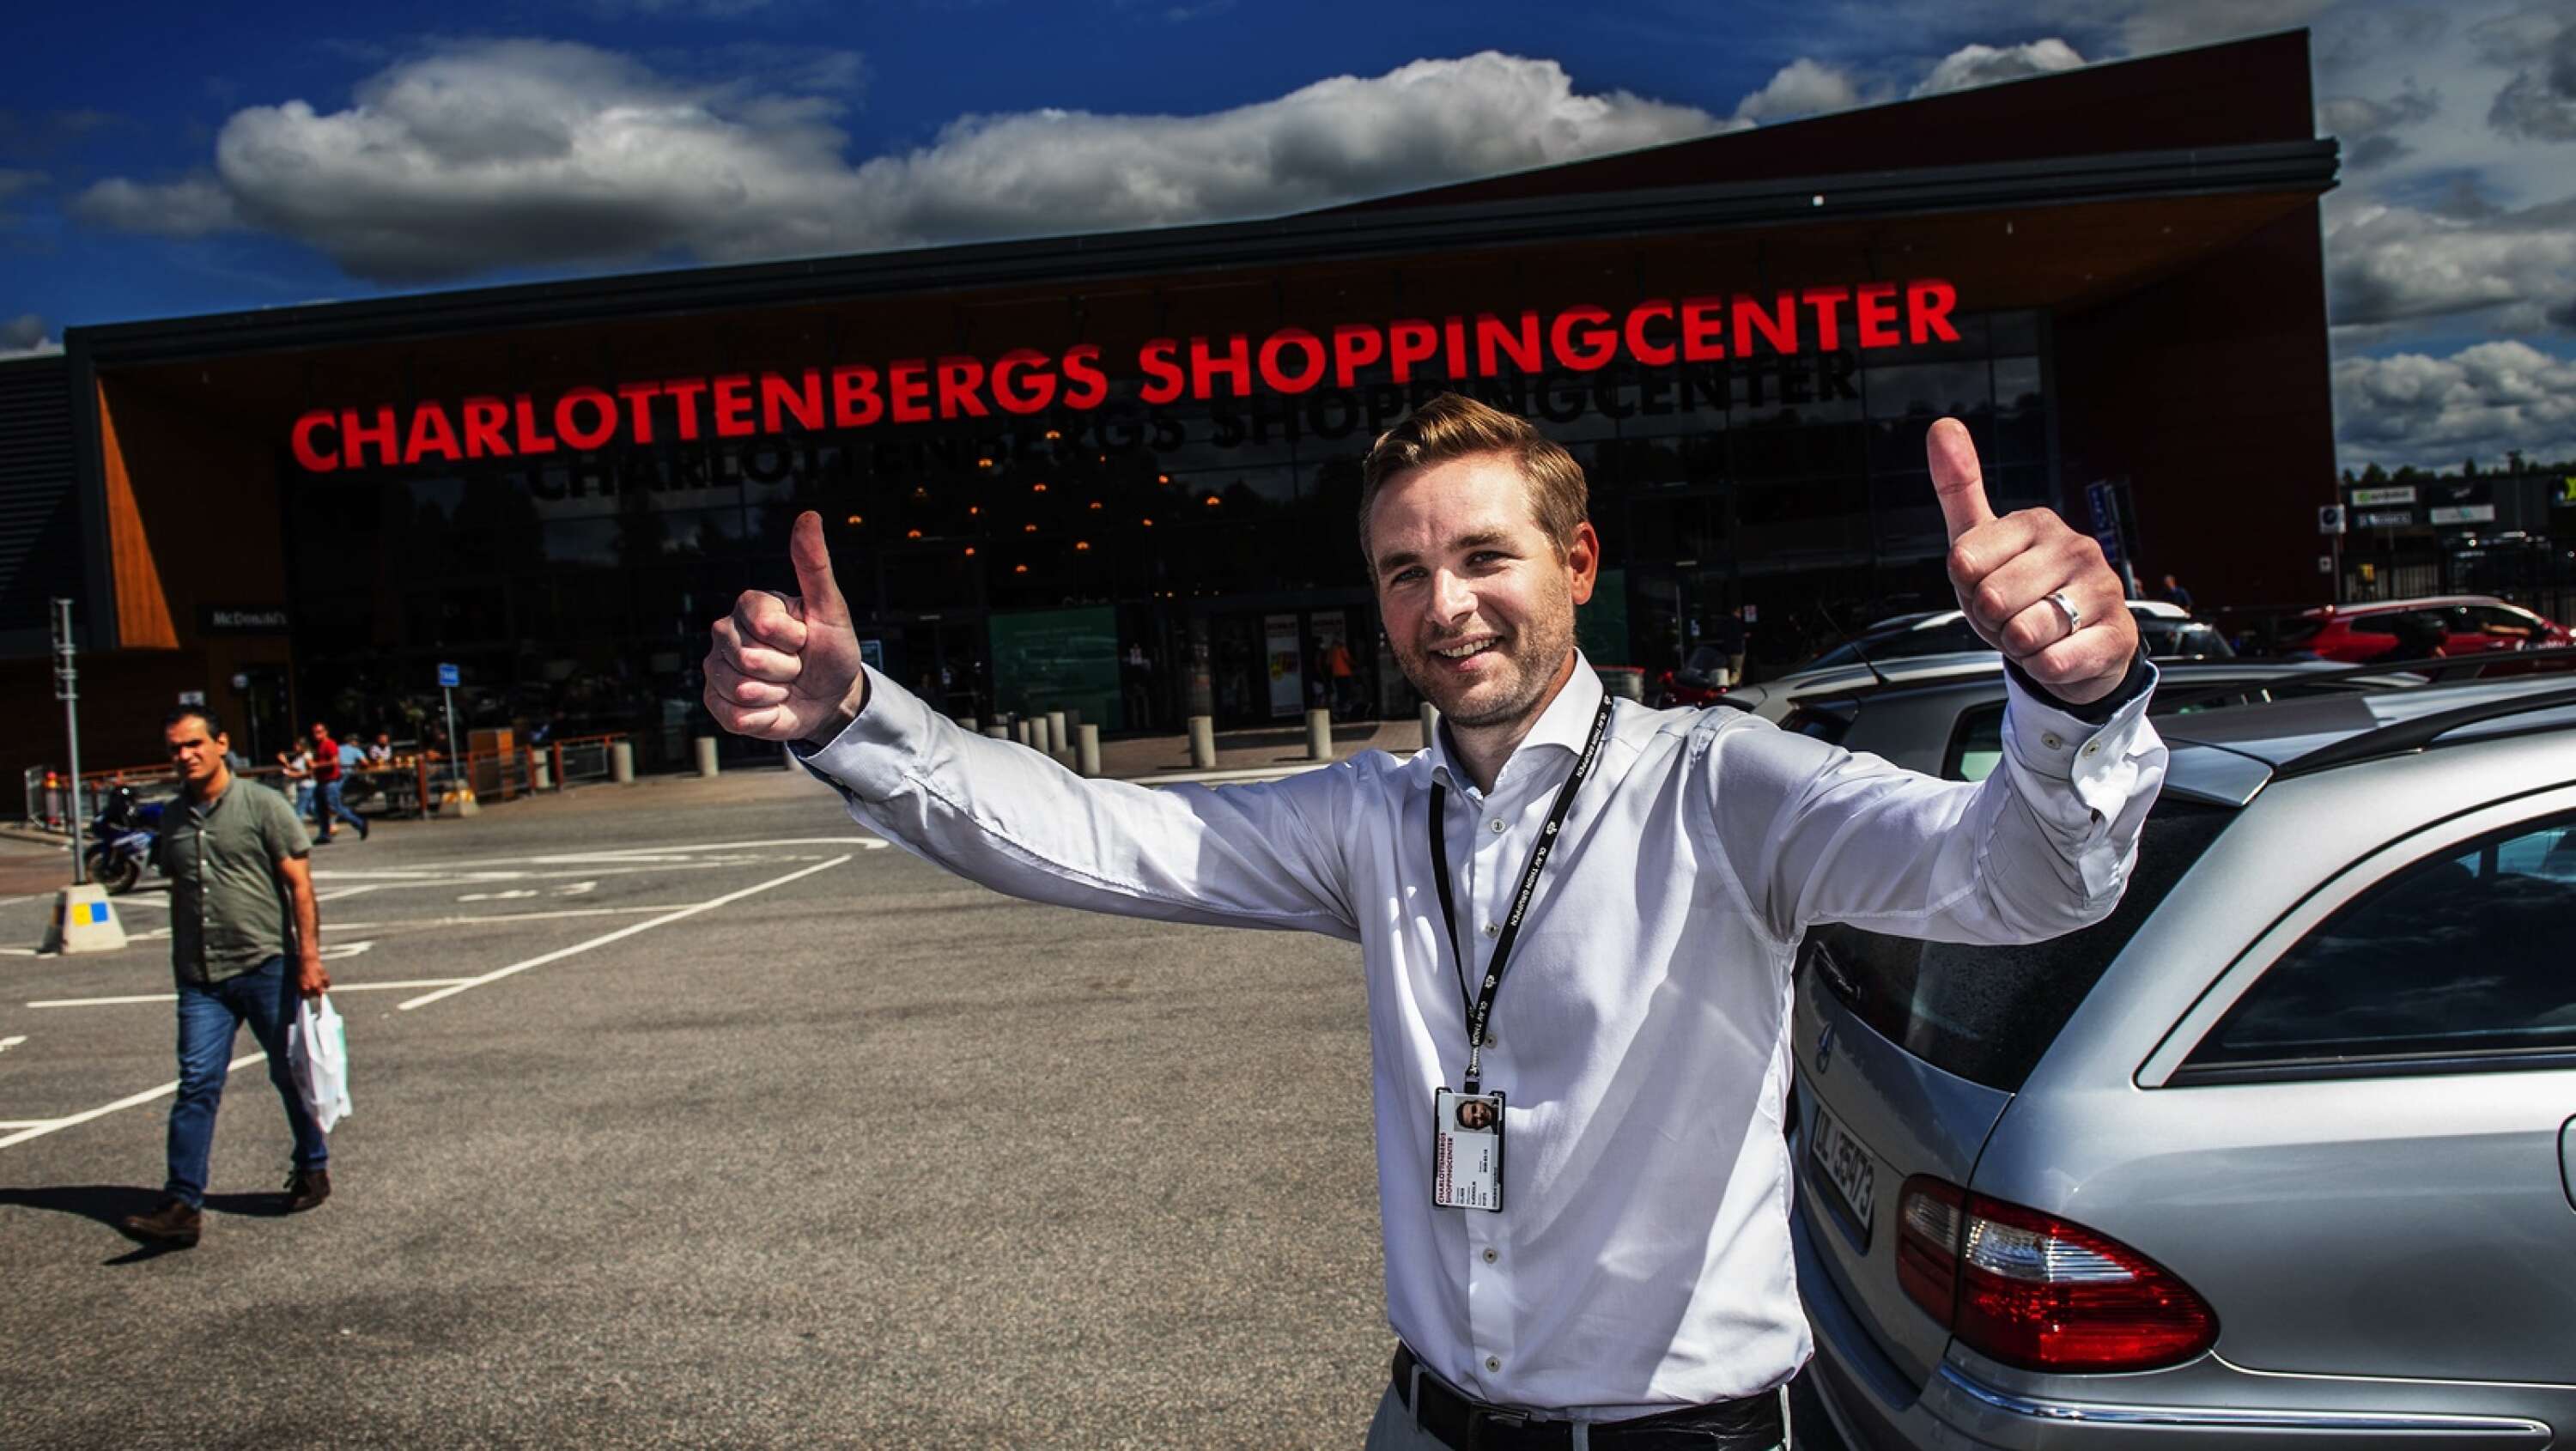 Claes Sjöholm, centerchef vid Charlottenbergs shoppingcenter gör tummen upp efter det norska beskedet om gränsöppning.